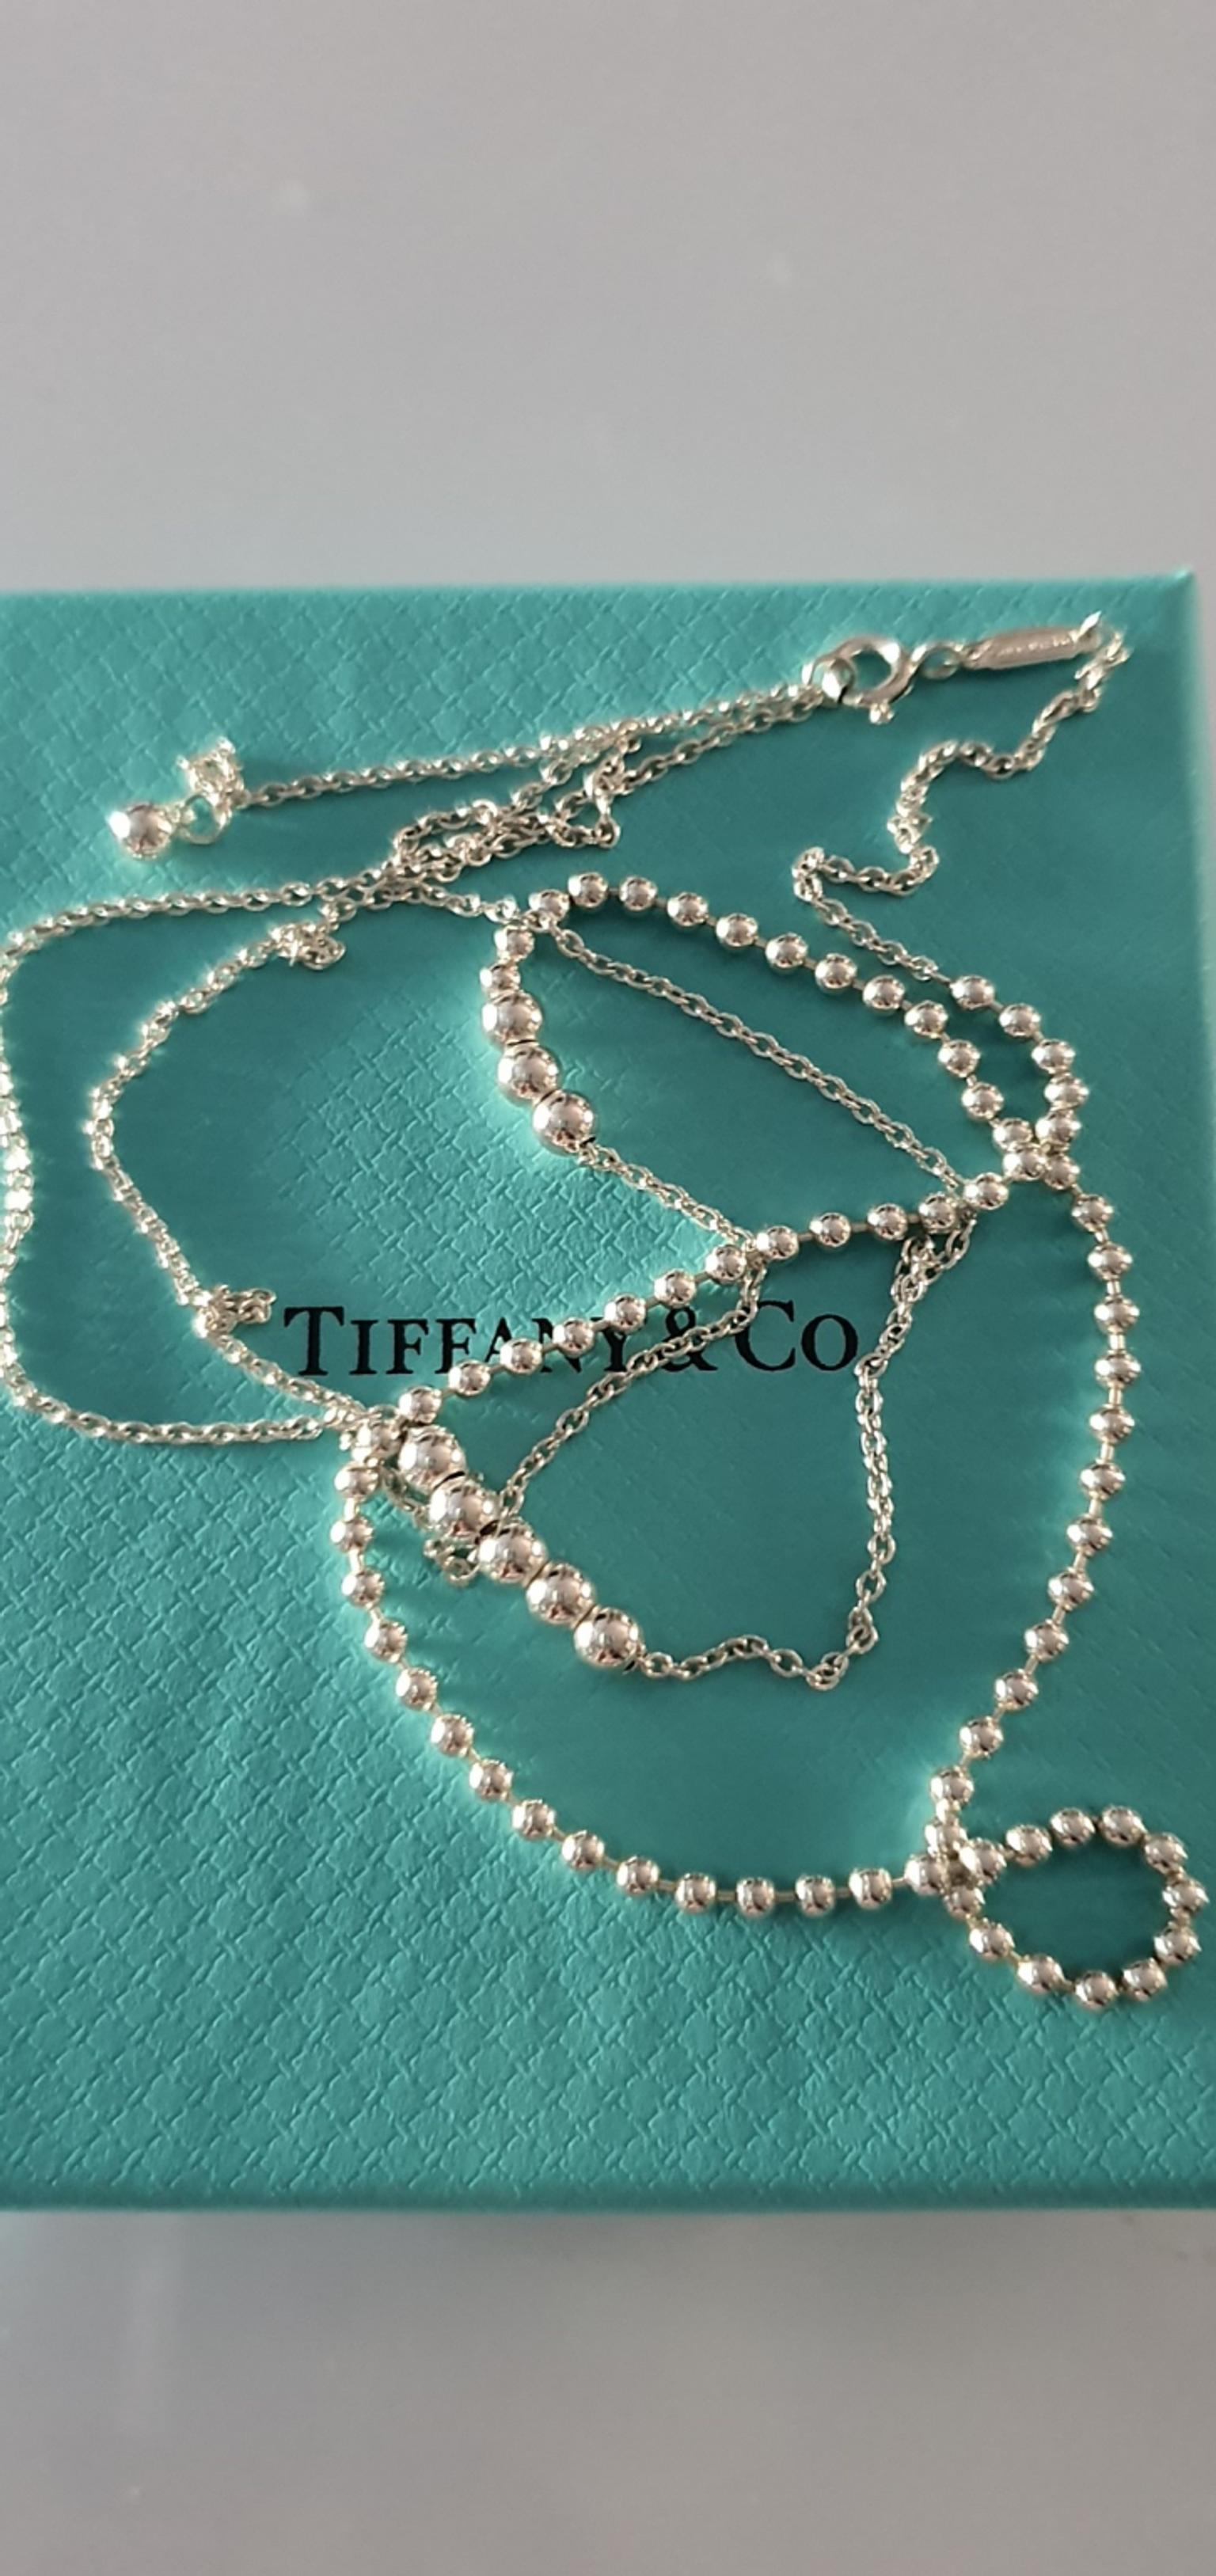 tiffany mixed bead chain